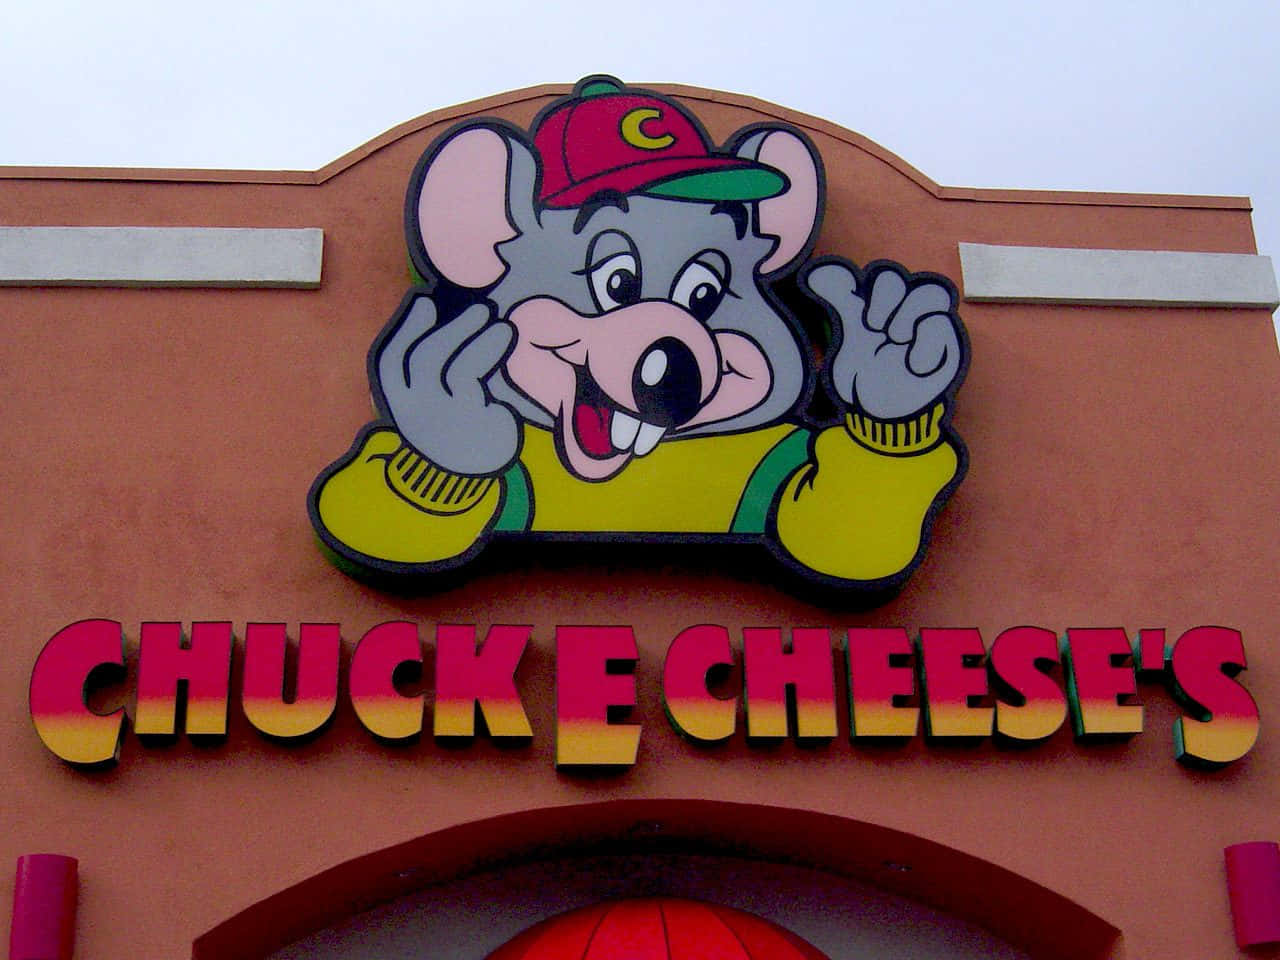 Enjoy the family fun at Chuck E Cheese!